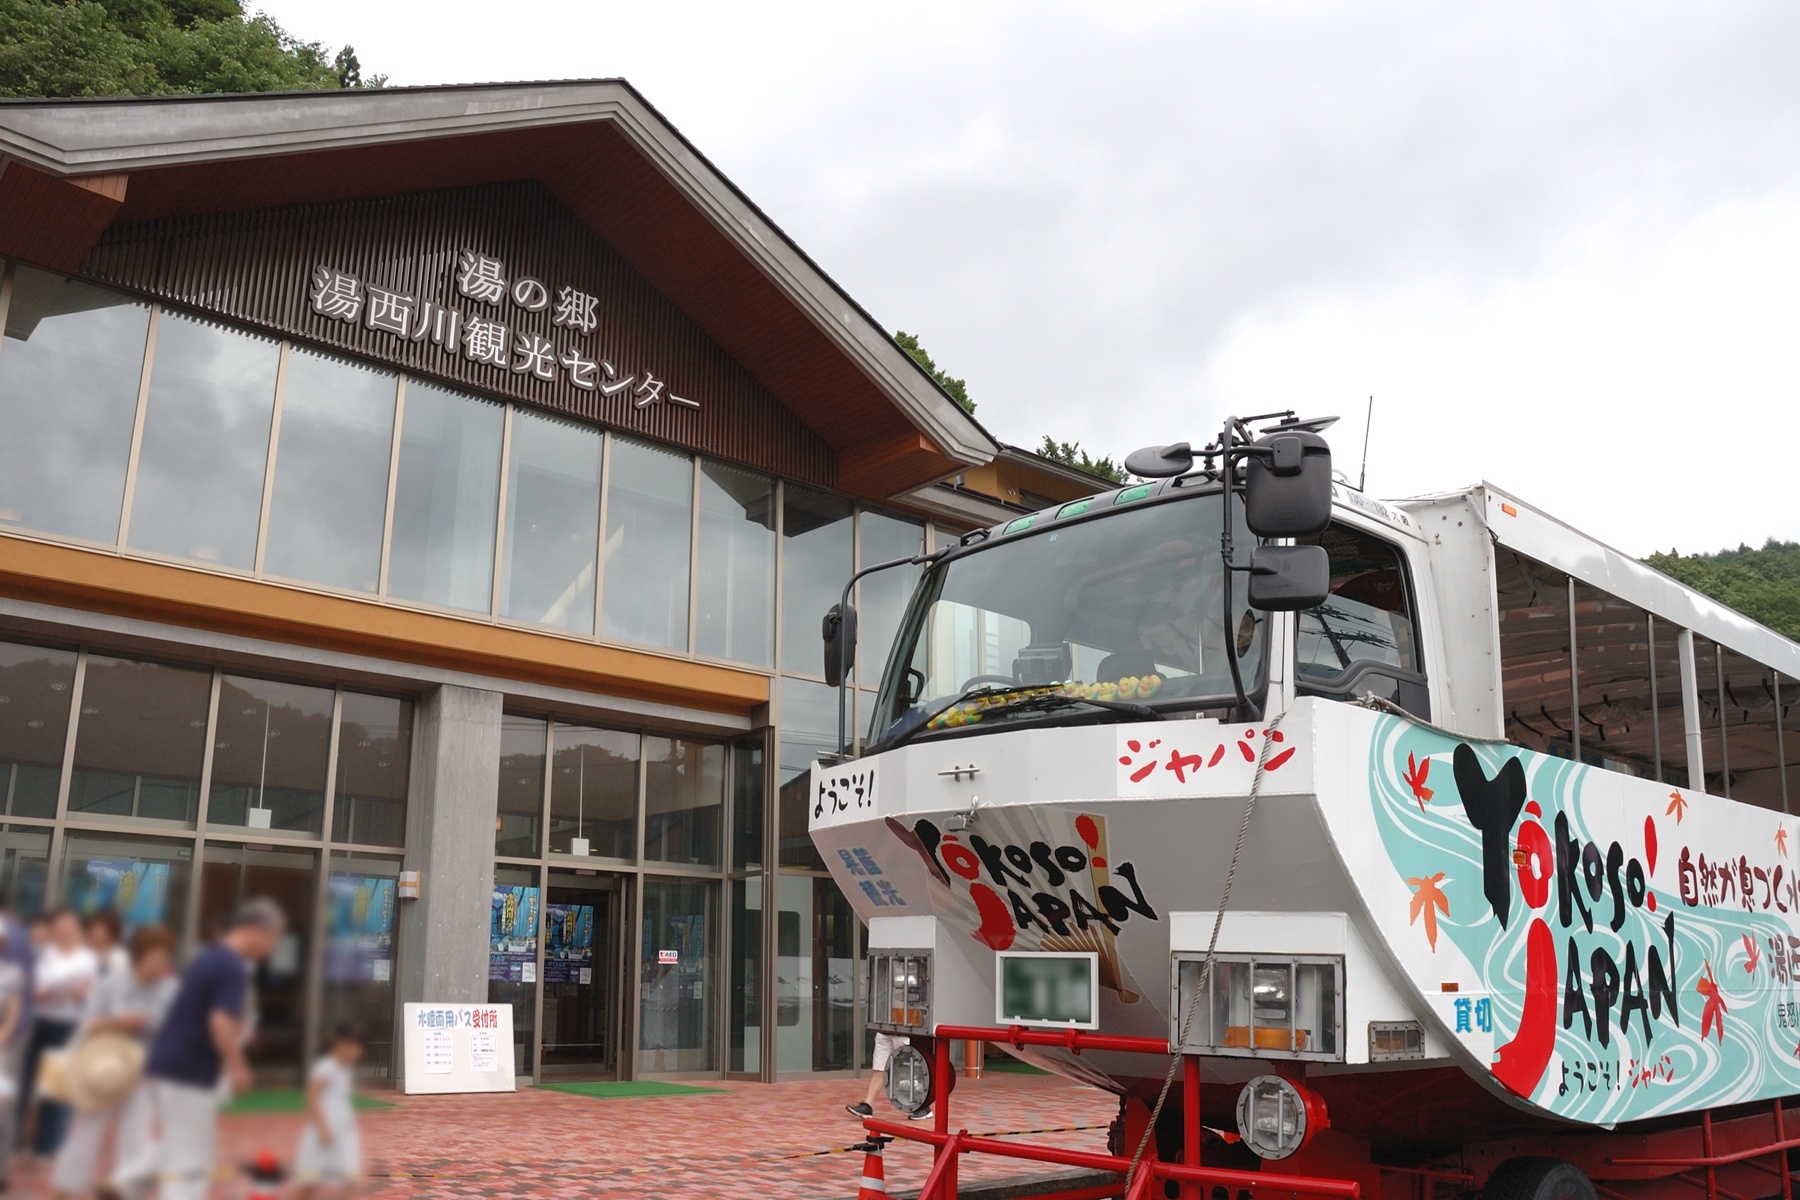 תחנת יונישיגאווה רודסייד - יונישיגאווה אונסן - Yunishigawa Roadside Station